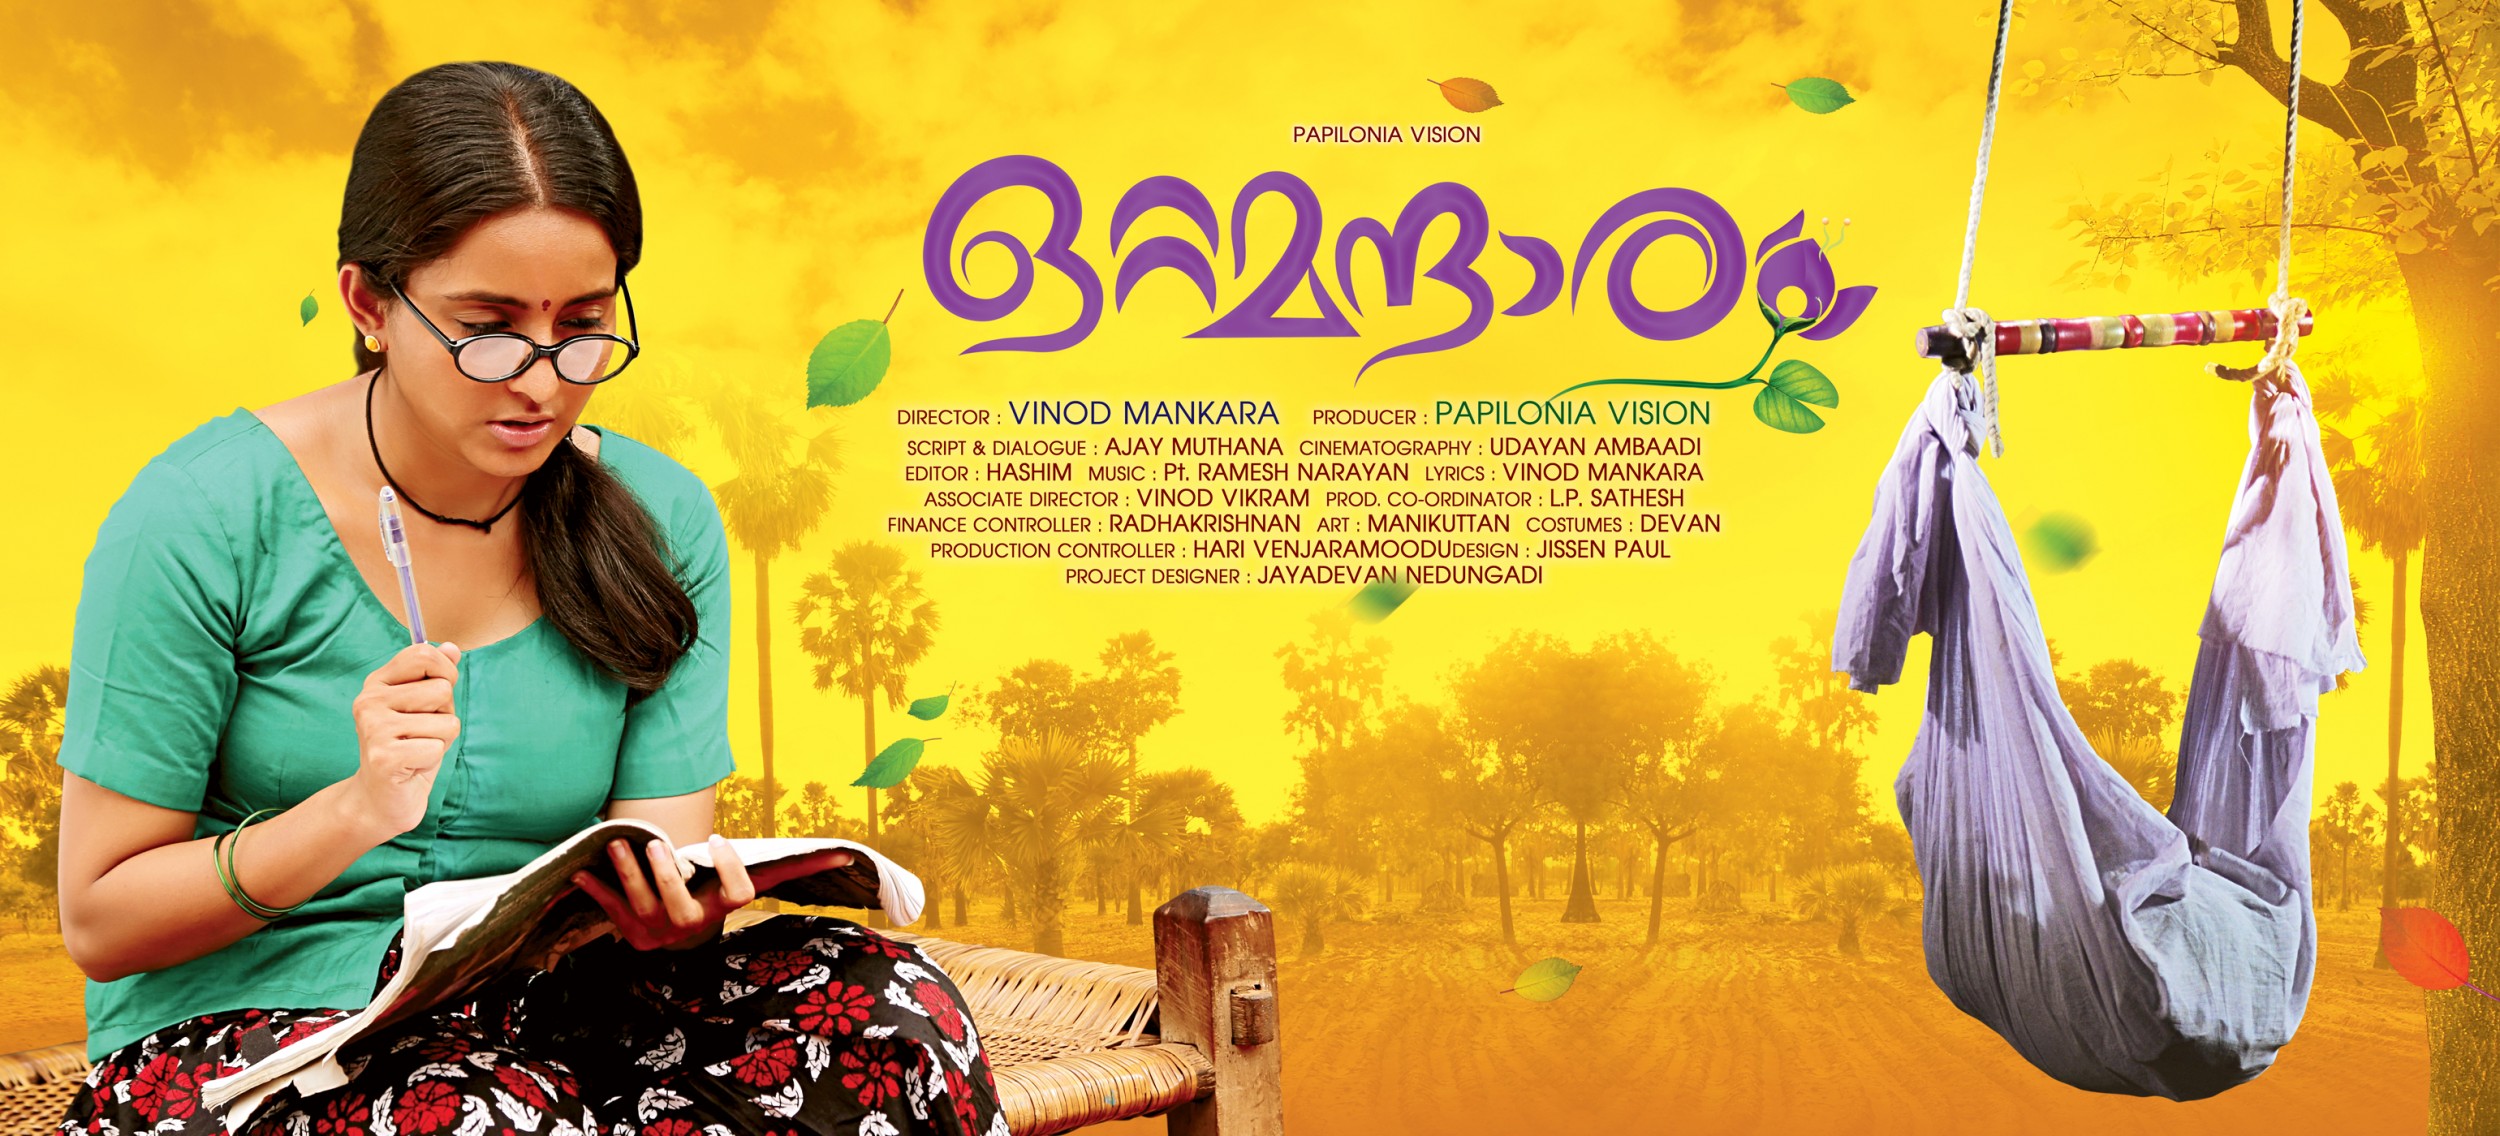 Mega Sized Movie Poster Image for Ottamantharam (#1 of 2)